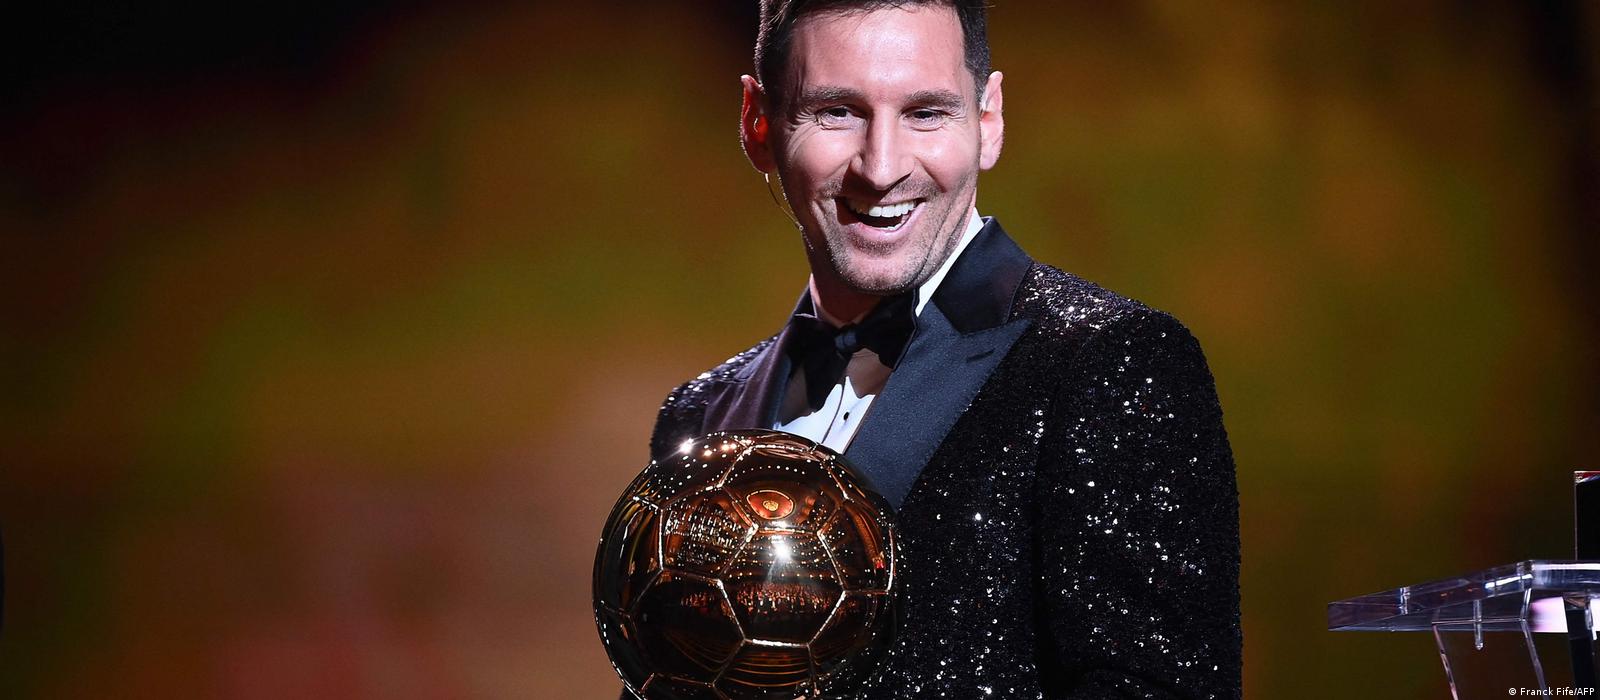 Ballon d'Or : Lionel Messi remporte son 7ème trophée – DW – 29/11/2021